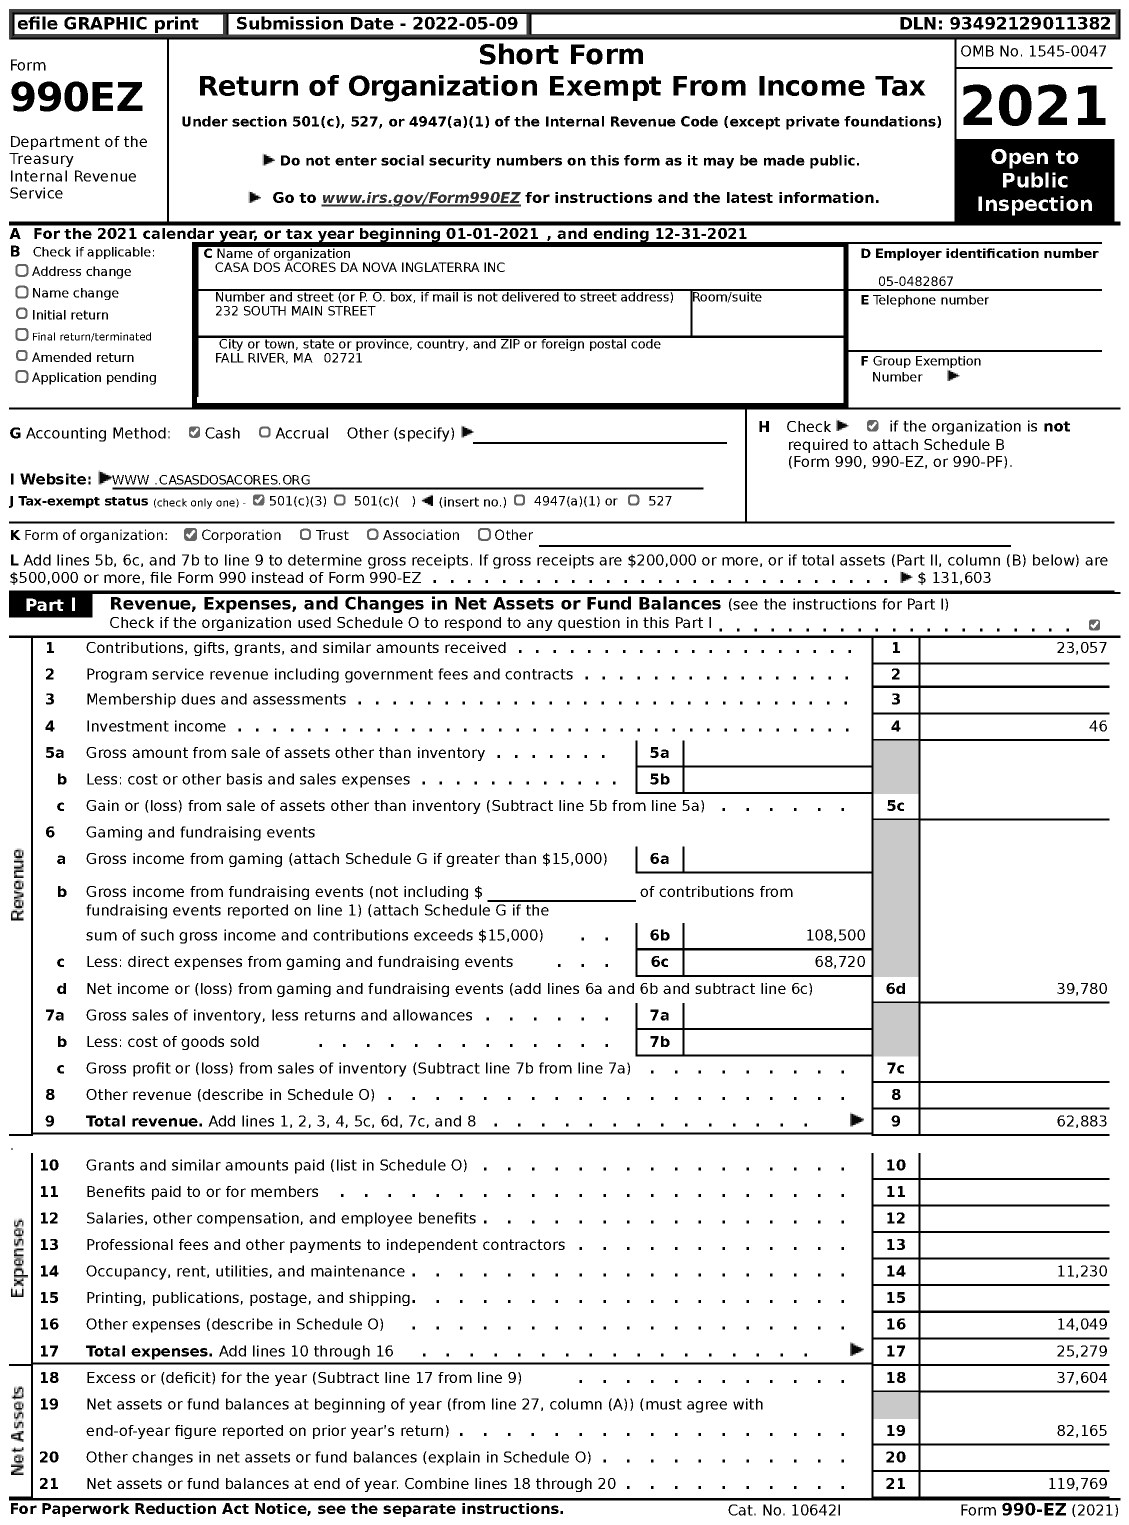 Image of first page of 2021 Form 990EZ for Casa Dos Acores Da Nova Inglaterra